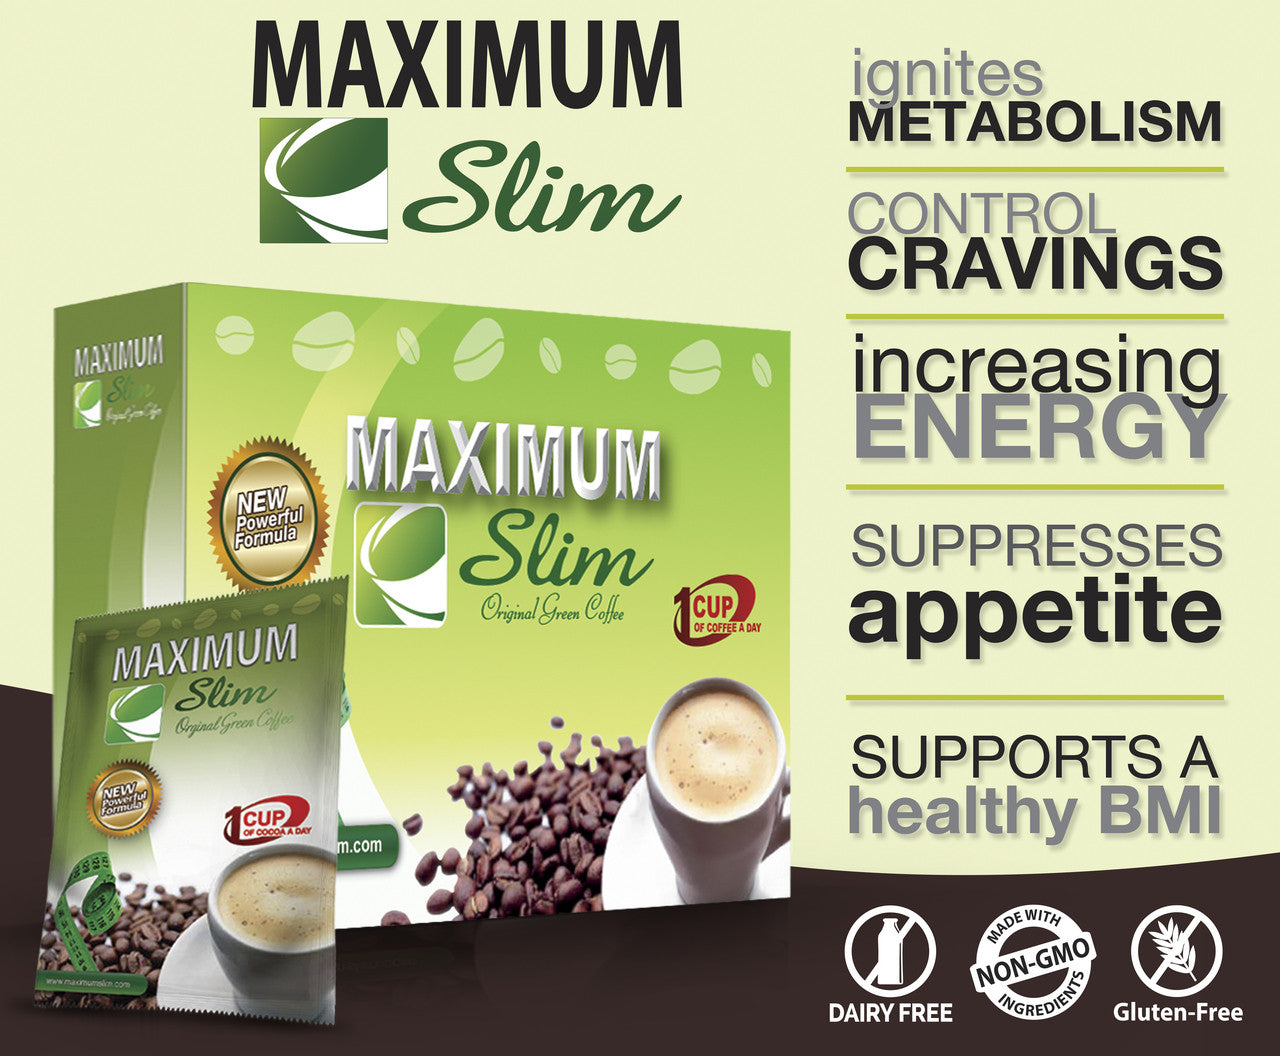 Maximum Slim Original Green Coffee, 12